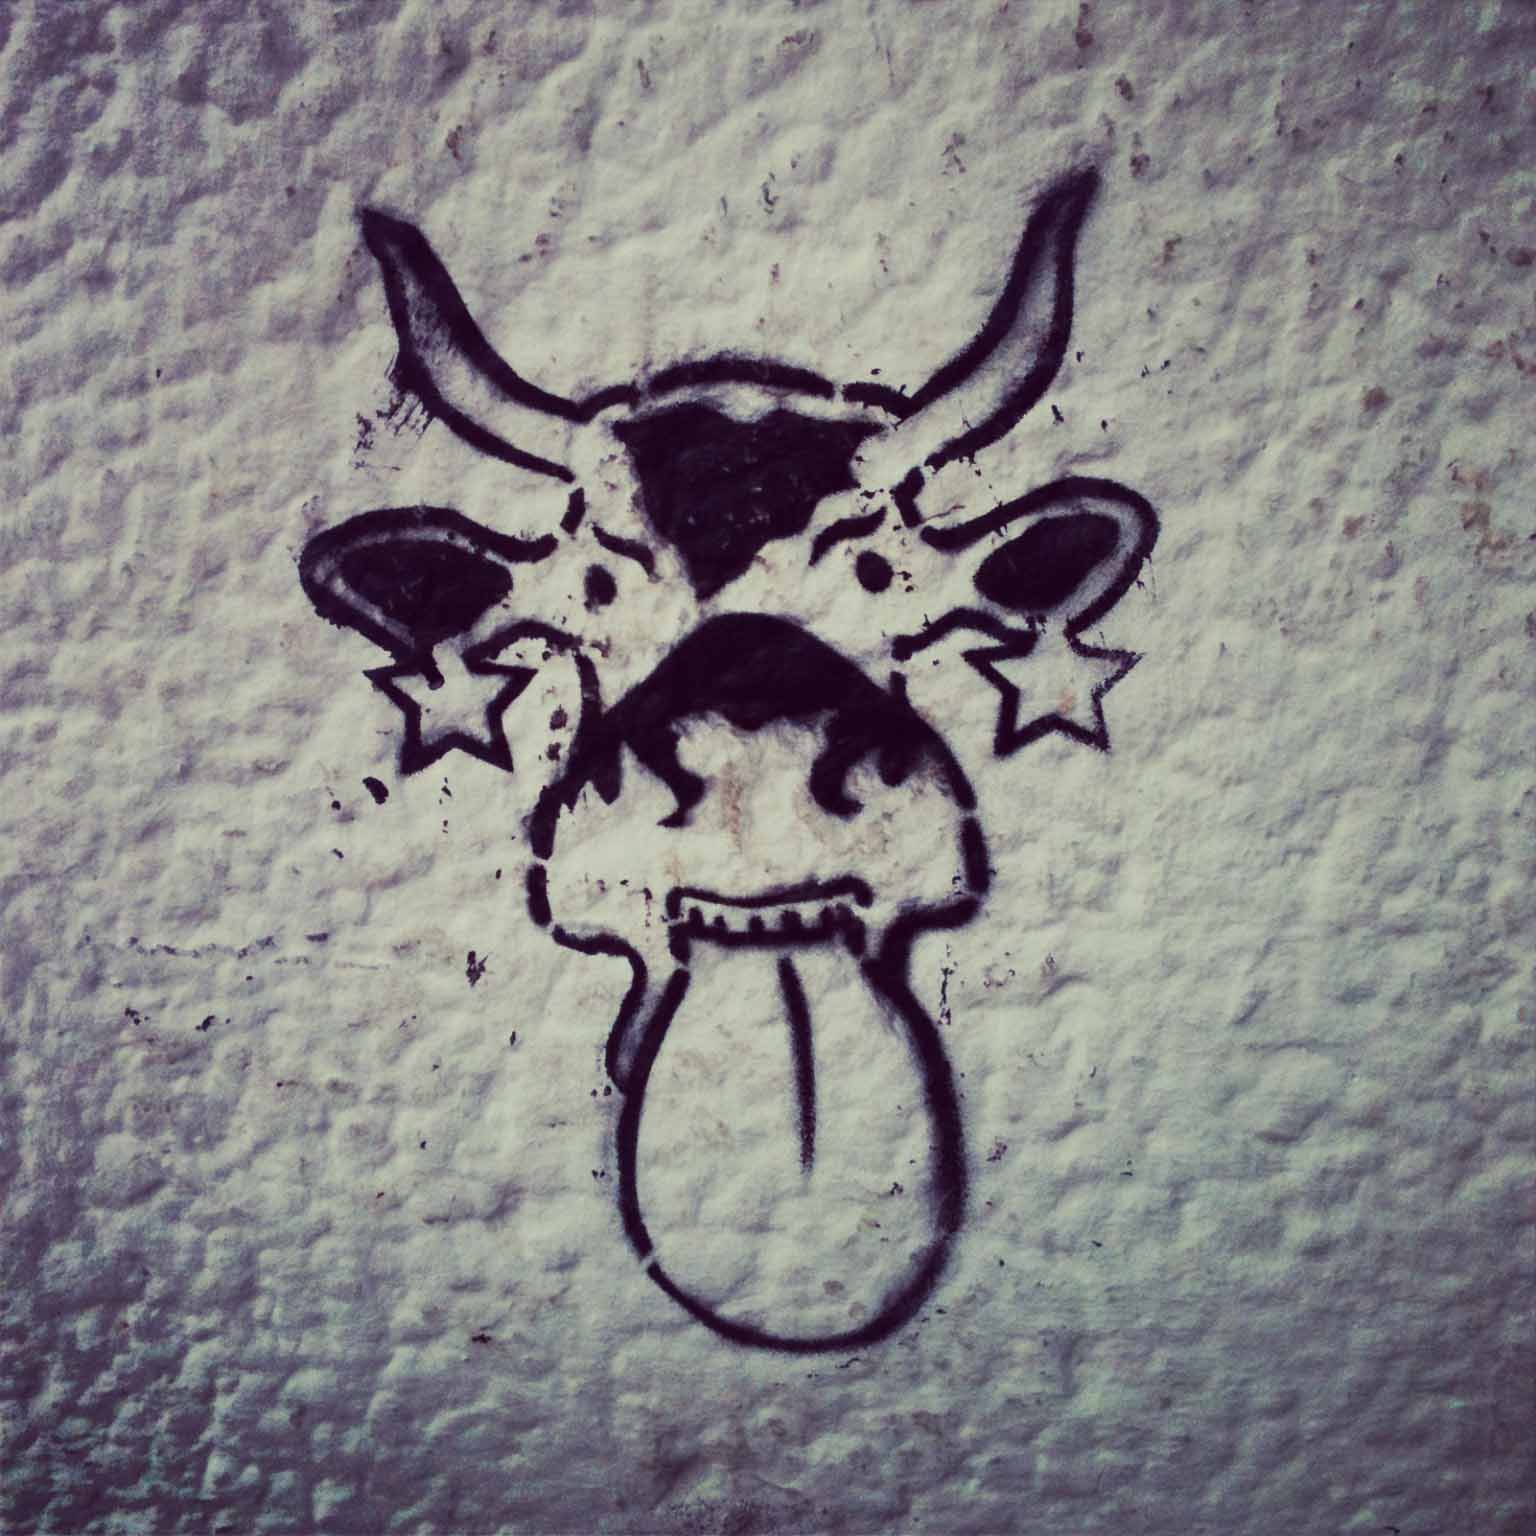 Cheeky Cow - Street Art by Unknown Artist in Berlin